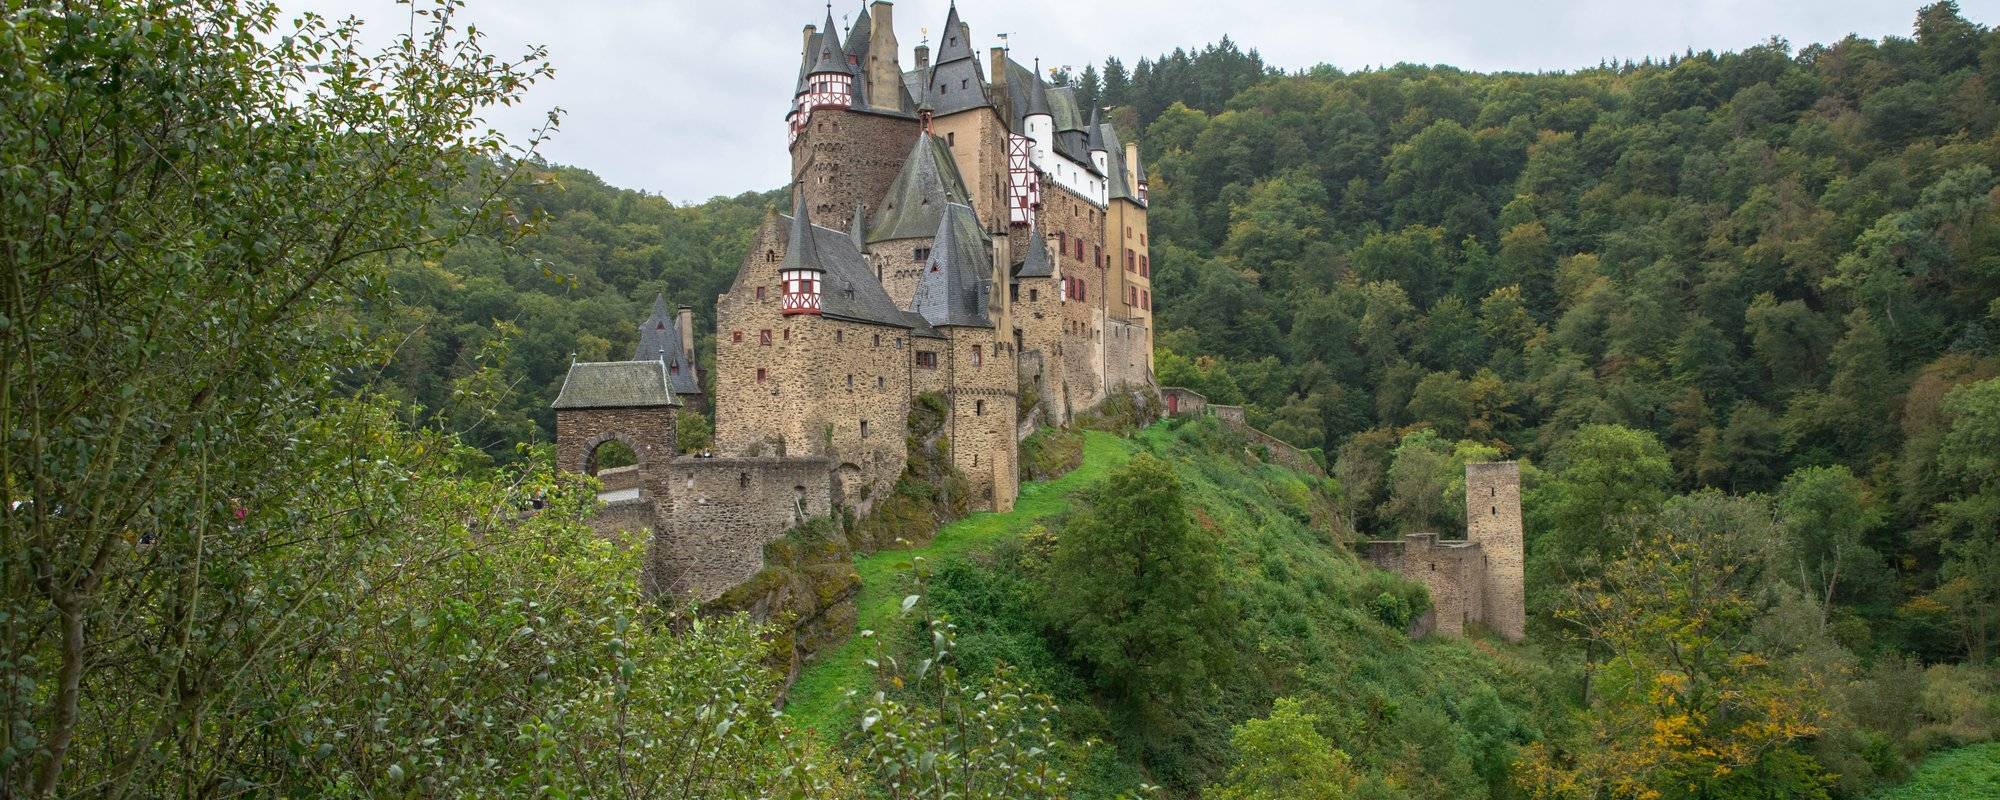 Fairytale Castle Eltz